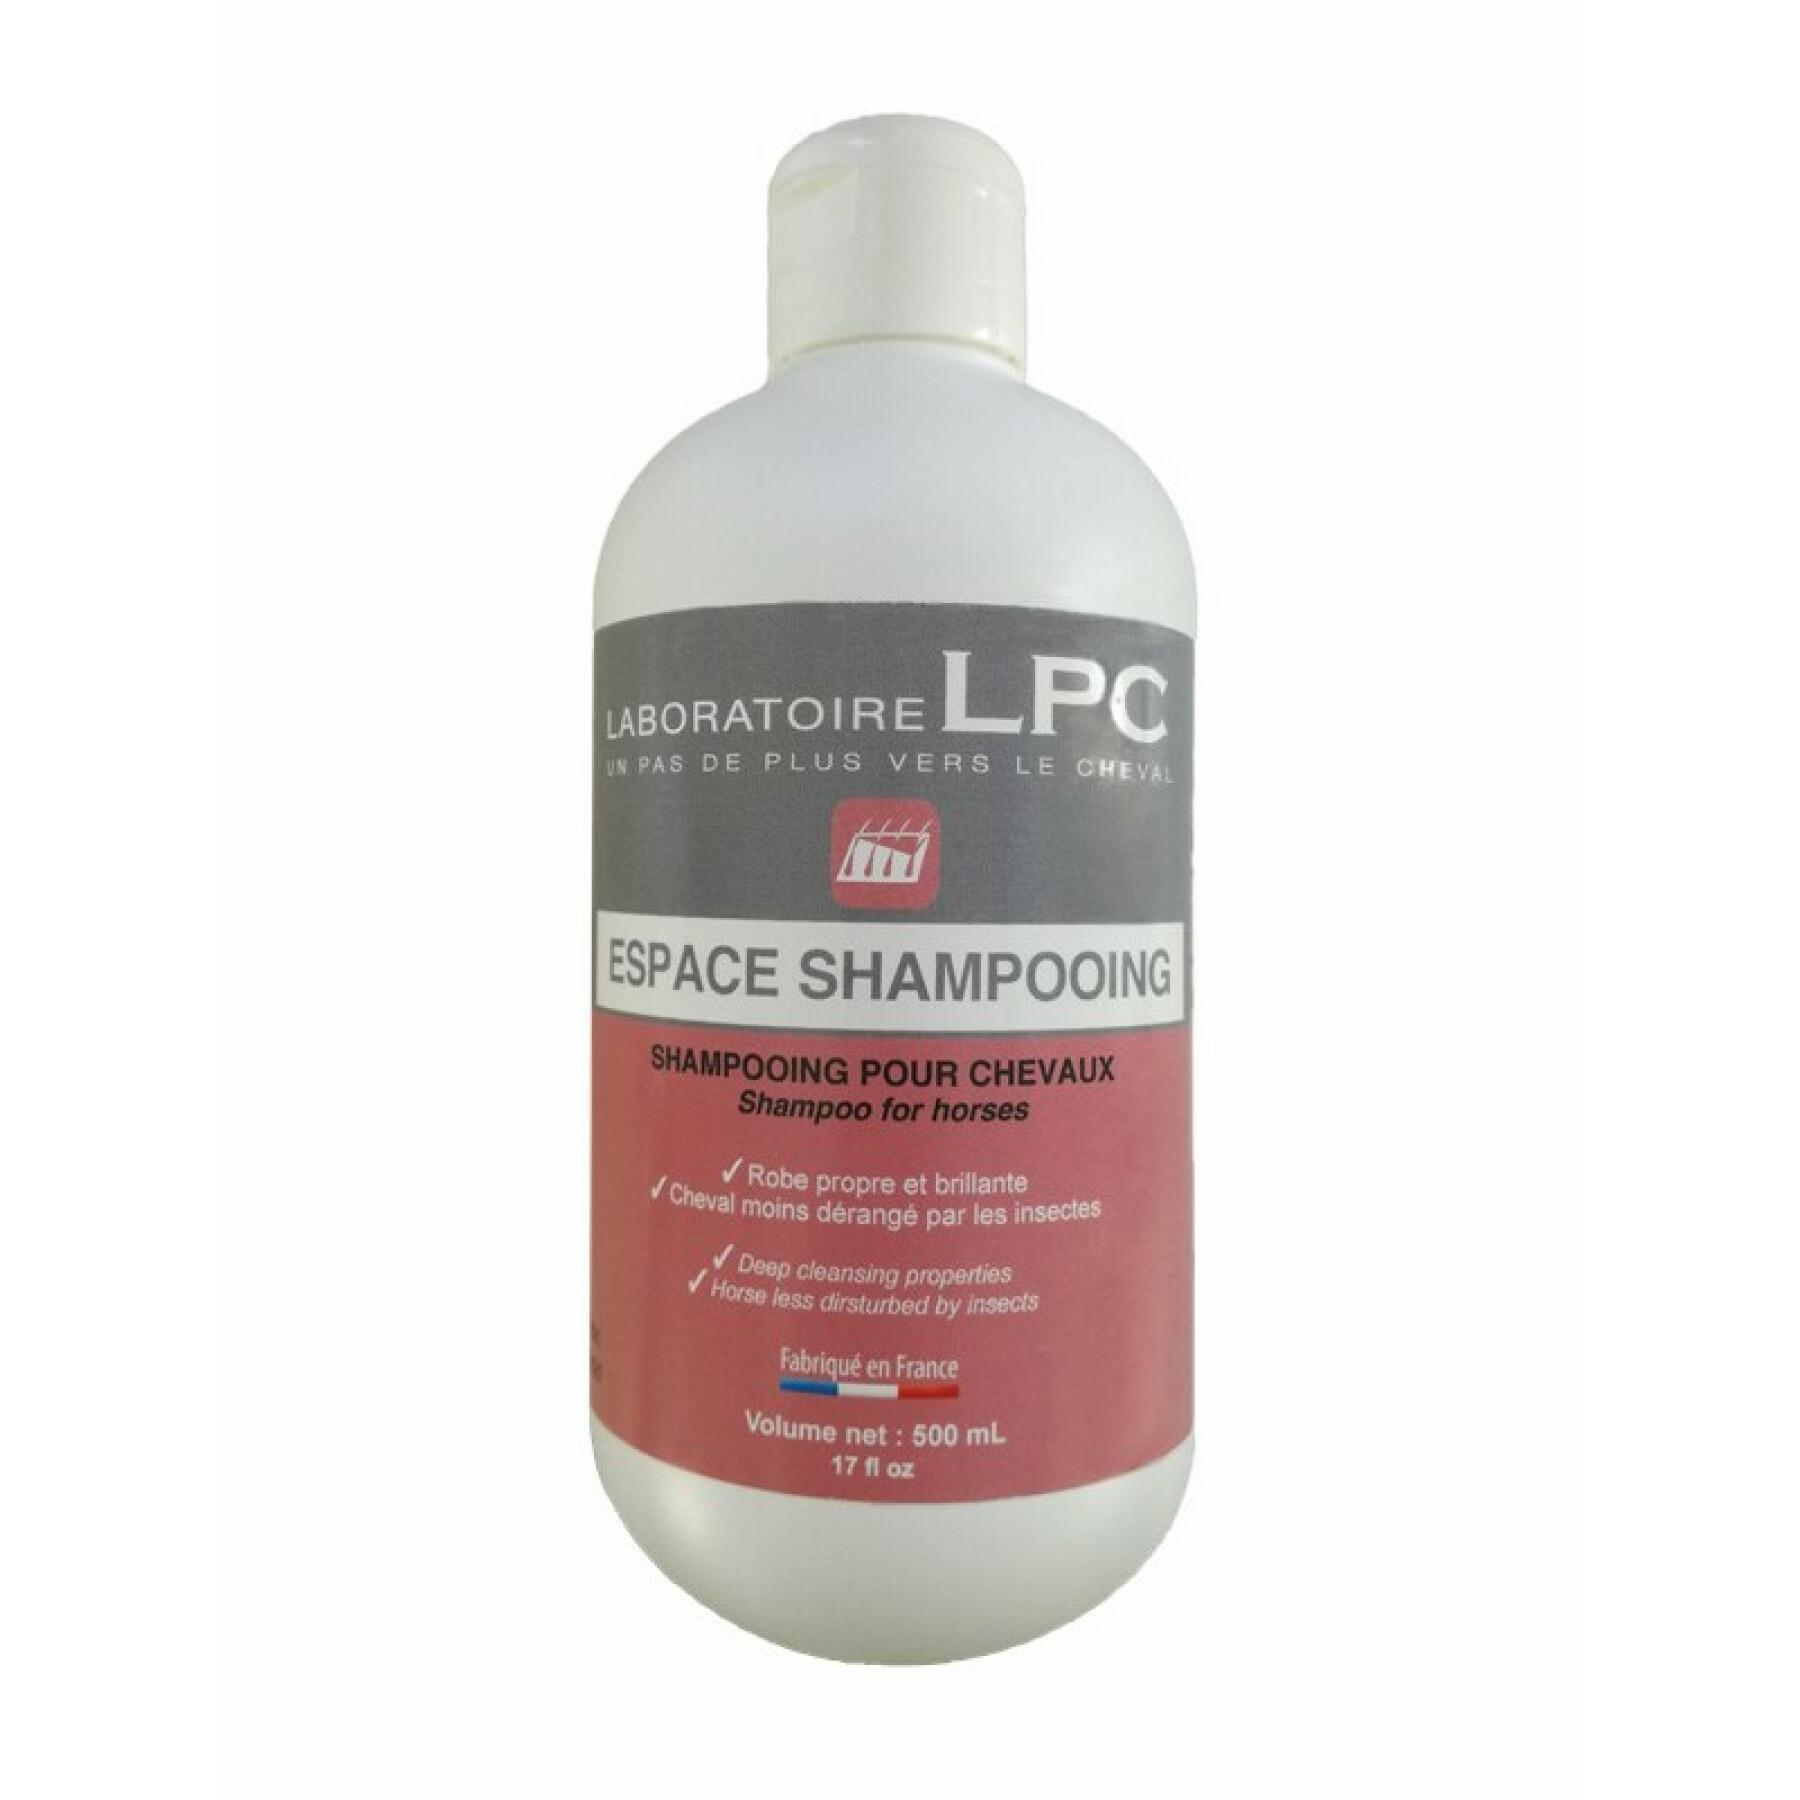 Shampoo für Pferde Lpc Espace 500ml